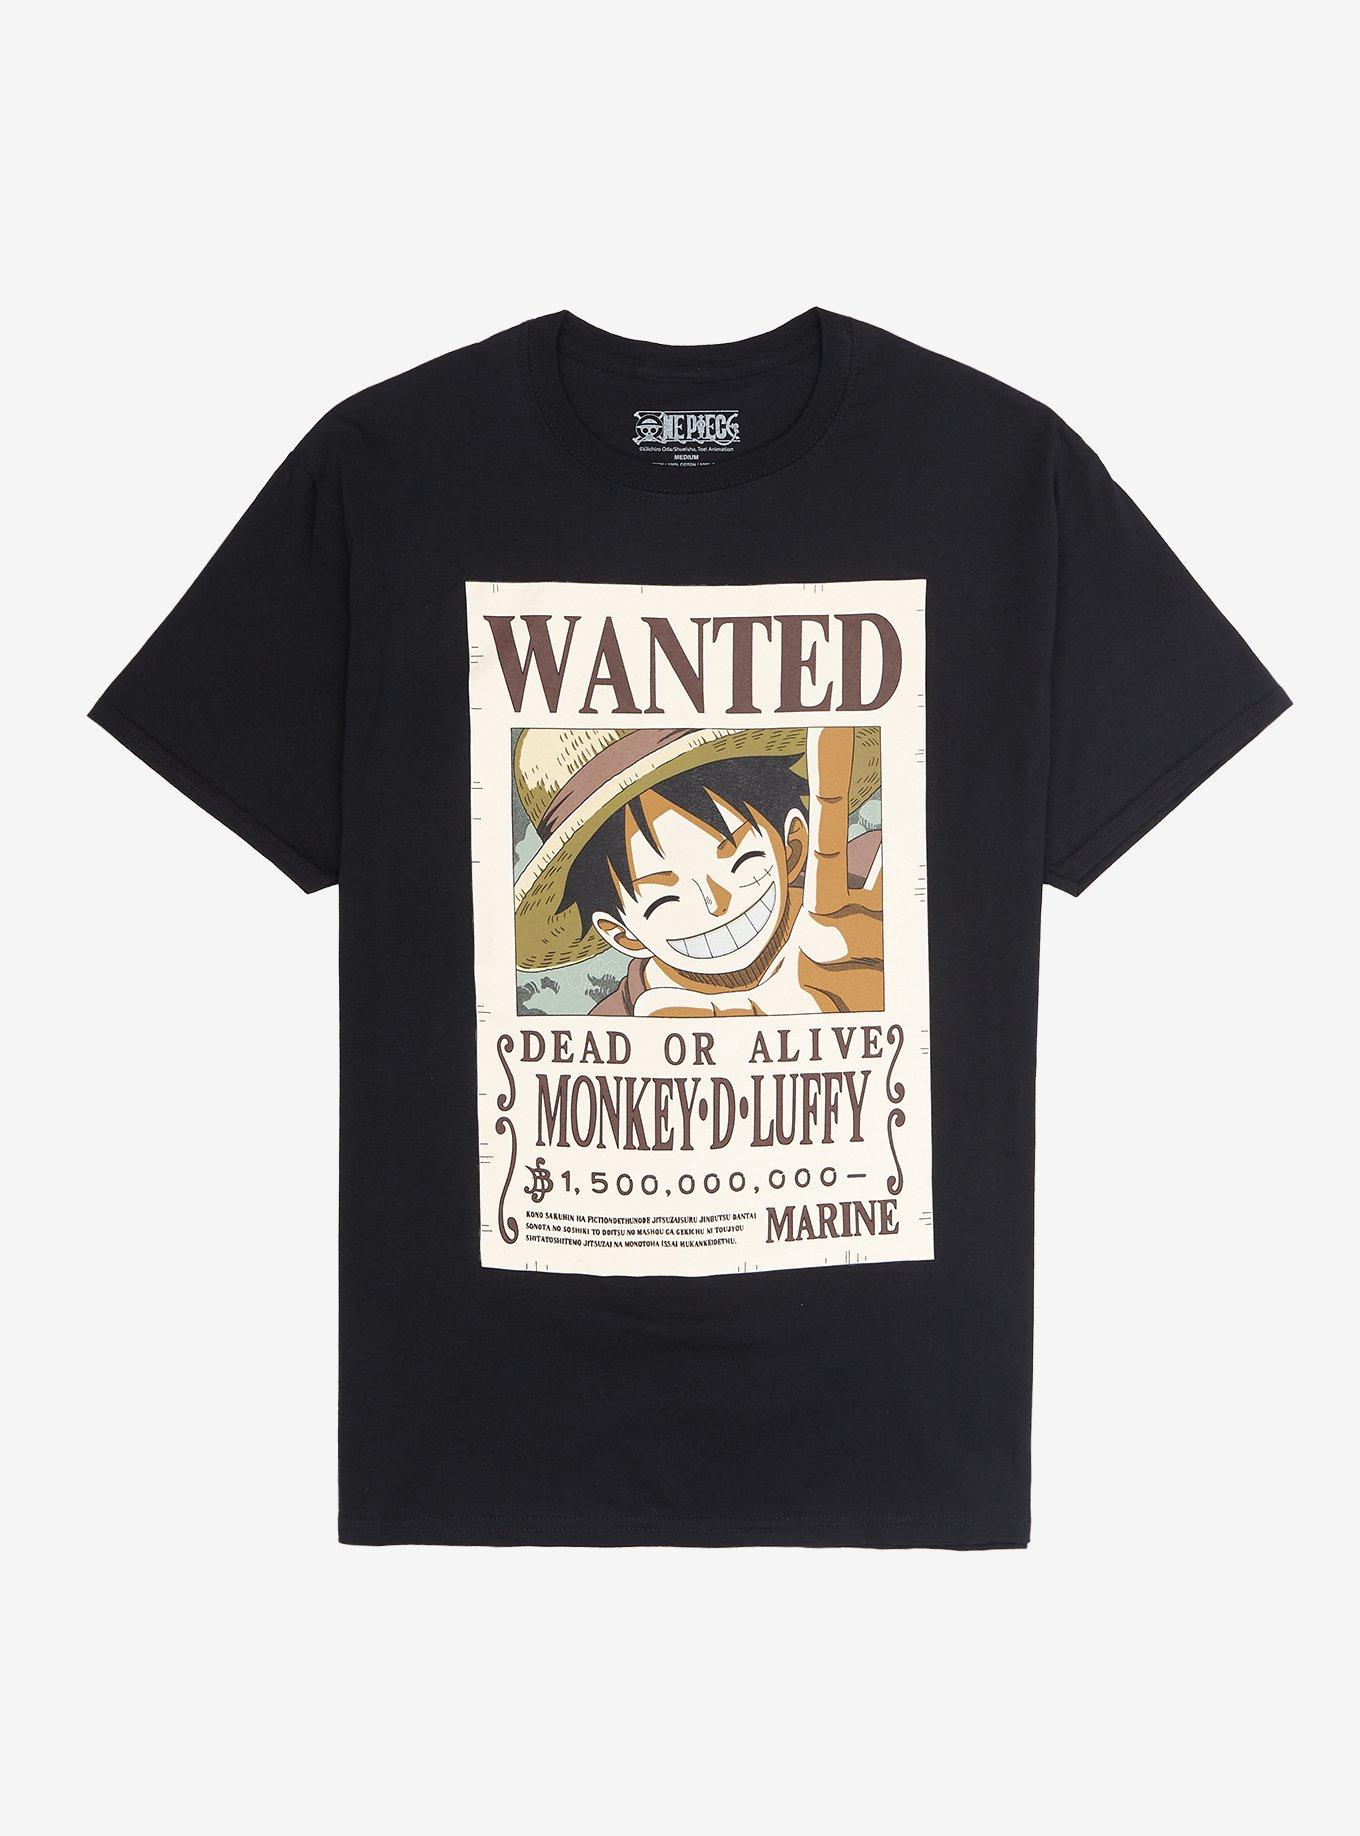 One Piece T-Shirts, One Piece Posters - One Piece T-Shirt Avis de Recherche  Luffy wanted OMS0911 - ®One Piece Merch